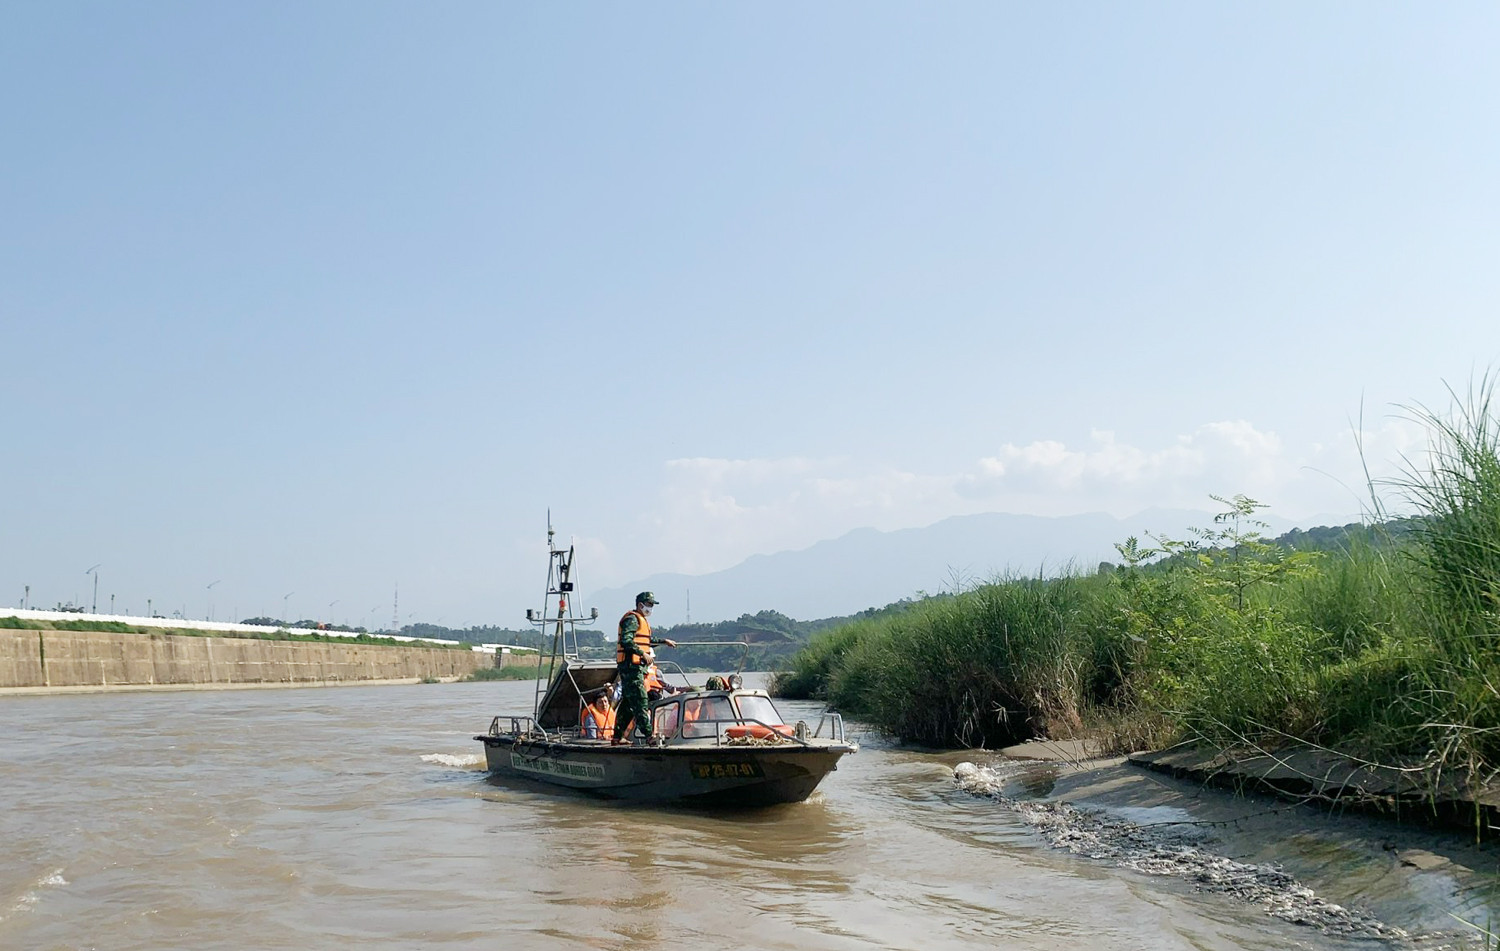 Khảo sát sản phẩm du lịch dọc sông Hồng trên địa bàn thành phố Lào Cai - Ảnh 2.